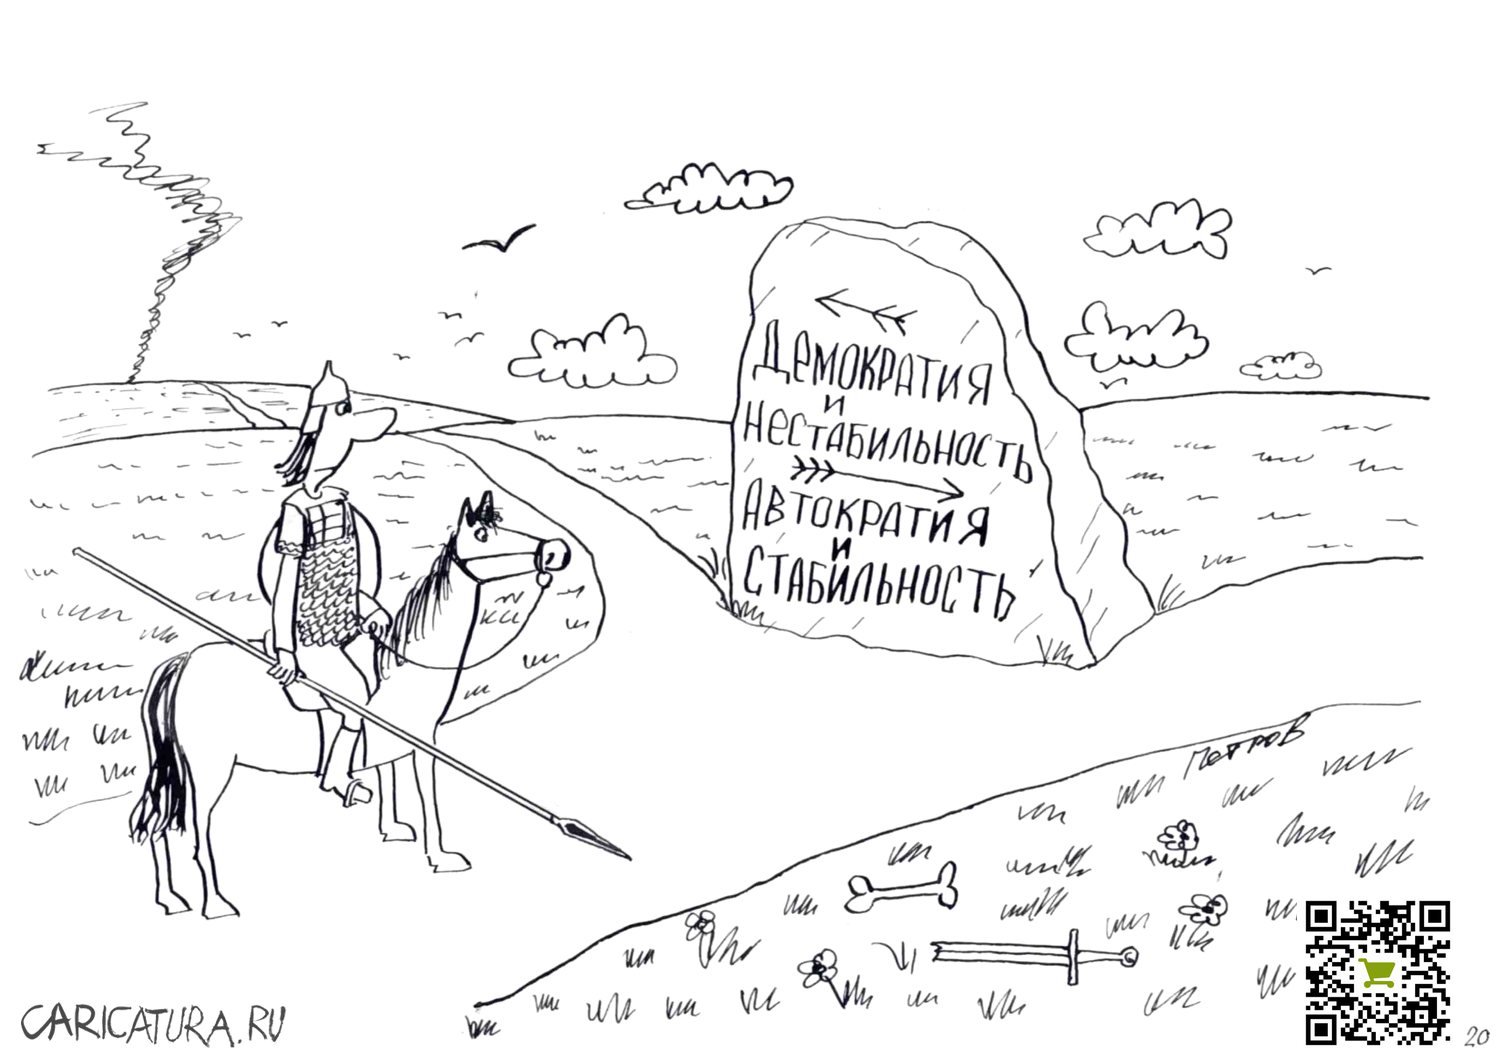 Карикатура "Политический выбор", Александр Петров